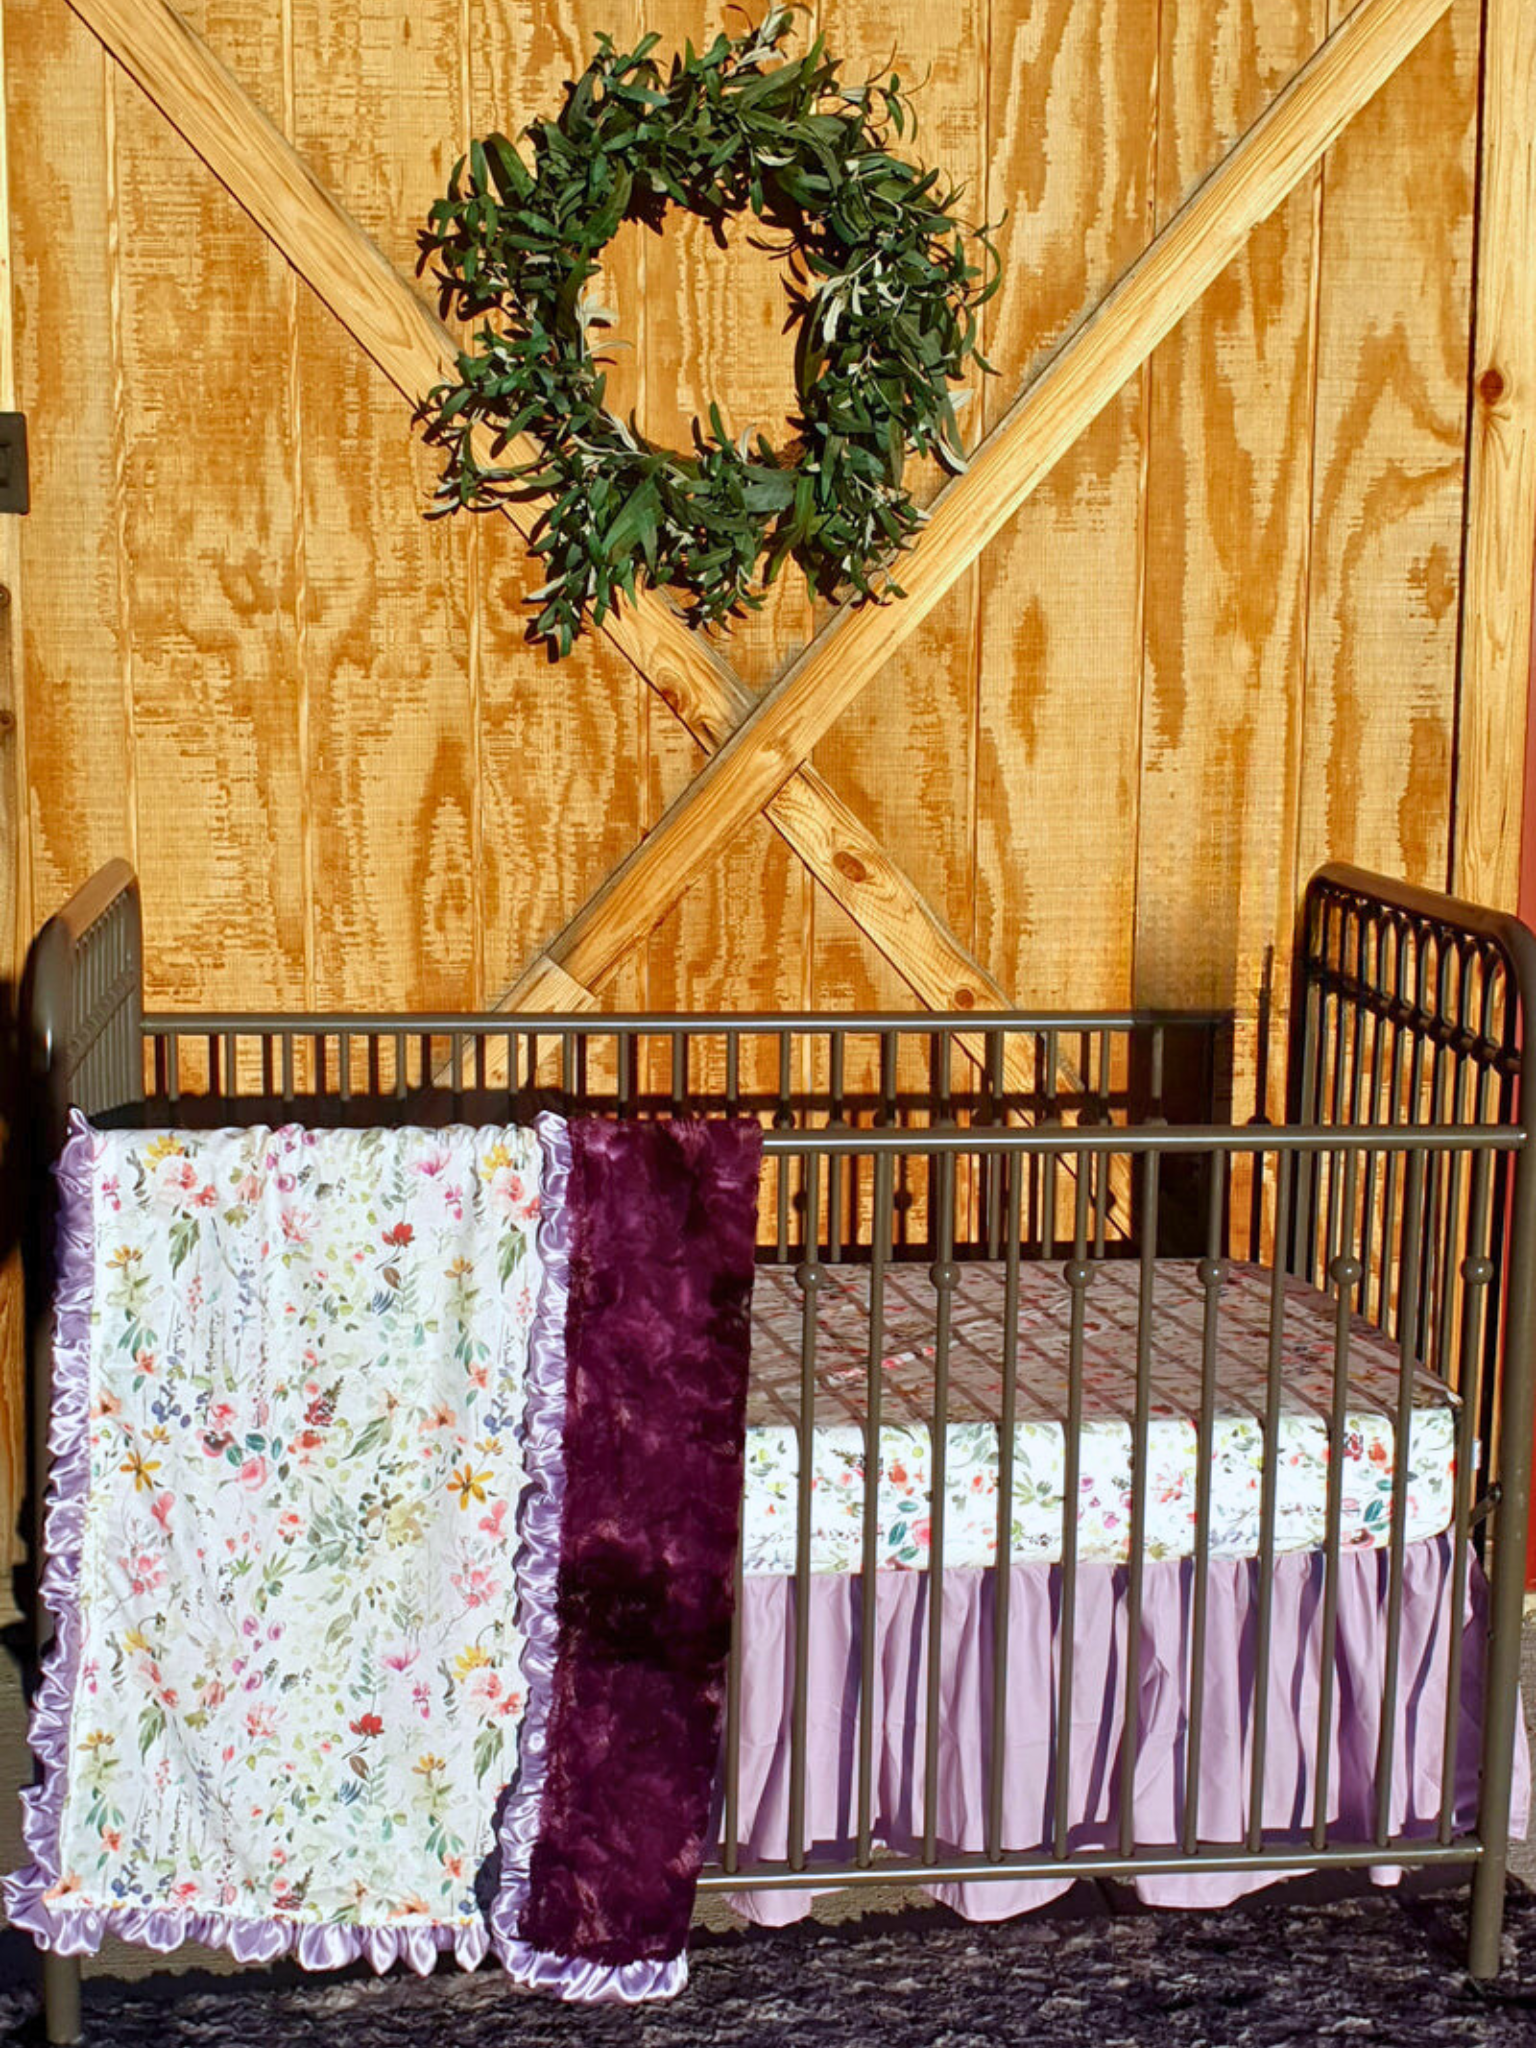 Custom Girl Crib Bedding- Wildflower Nature Baby Bedding Collection - DBC Baby Bedding Co 